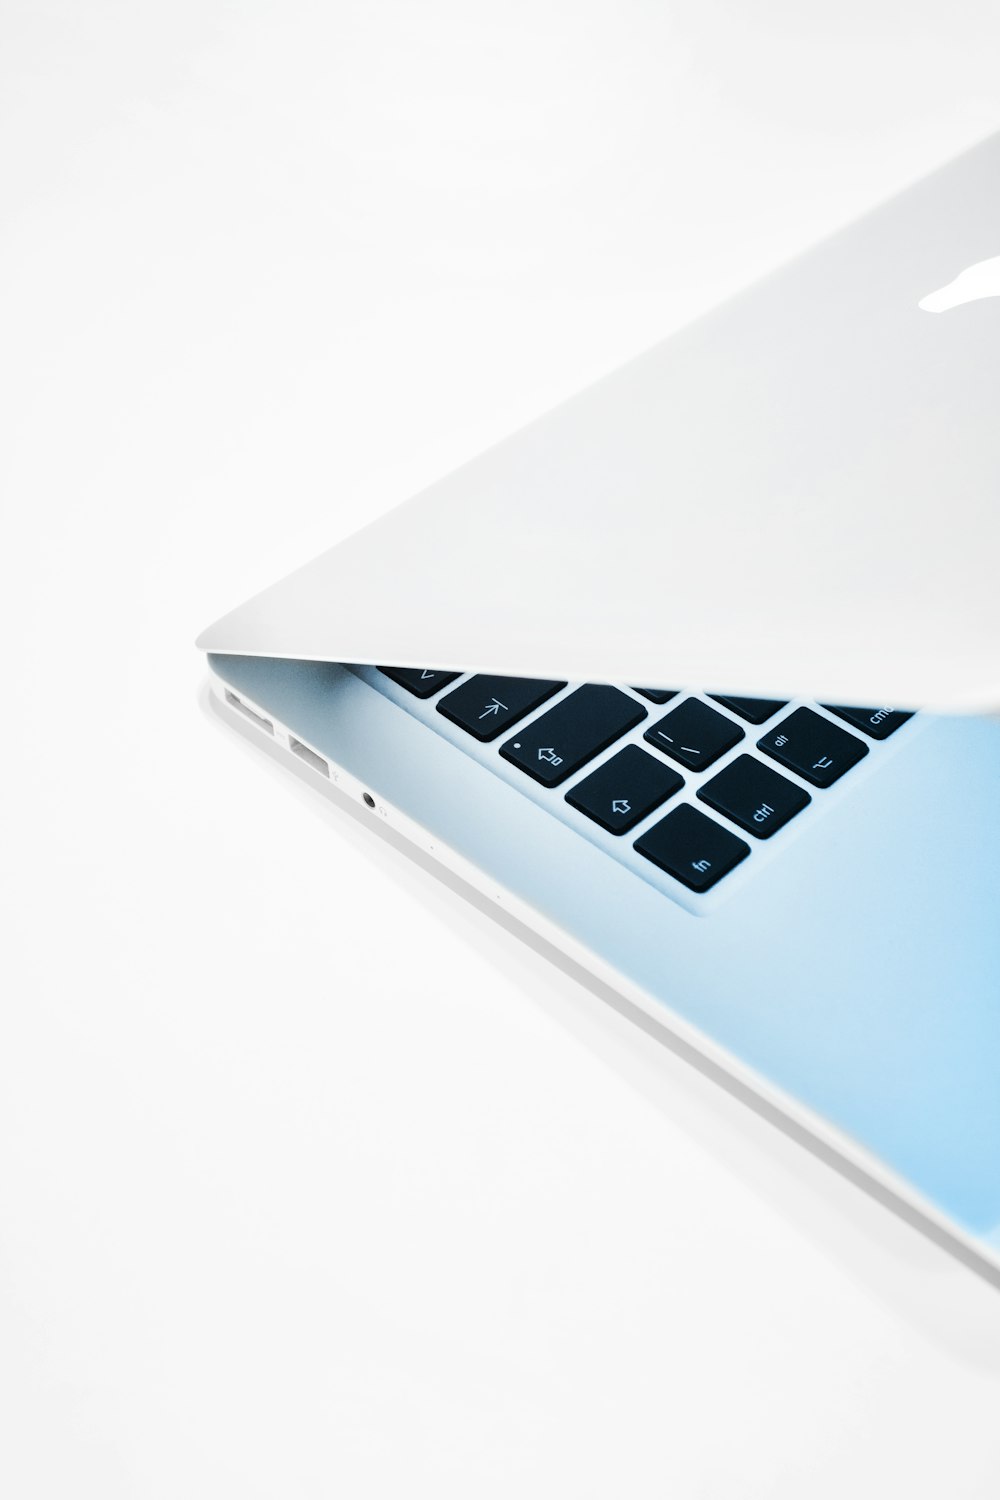 Un primo piano di un laptop su una superficie bianca